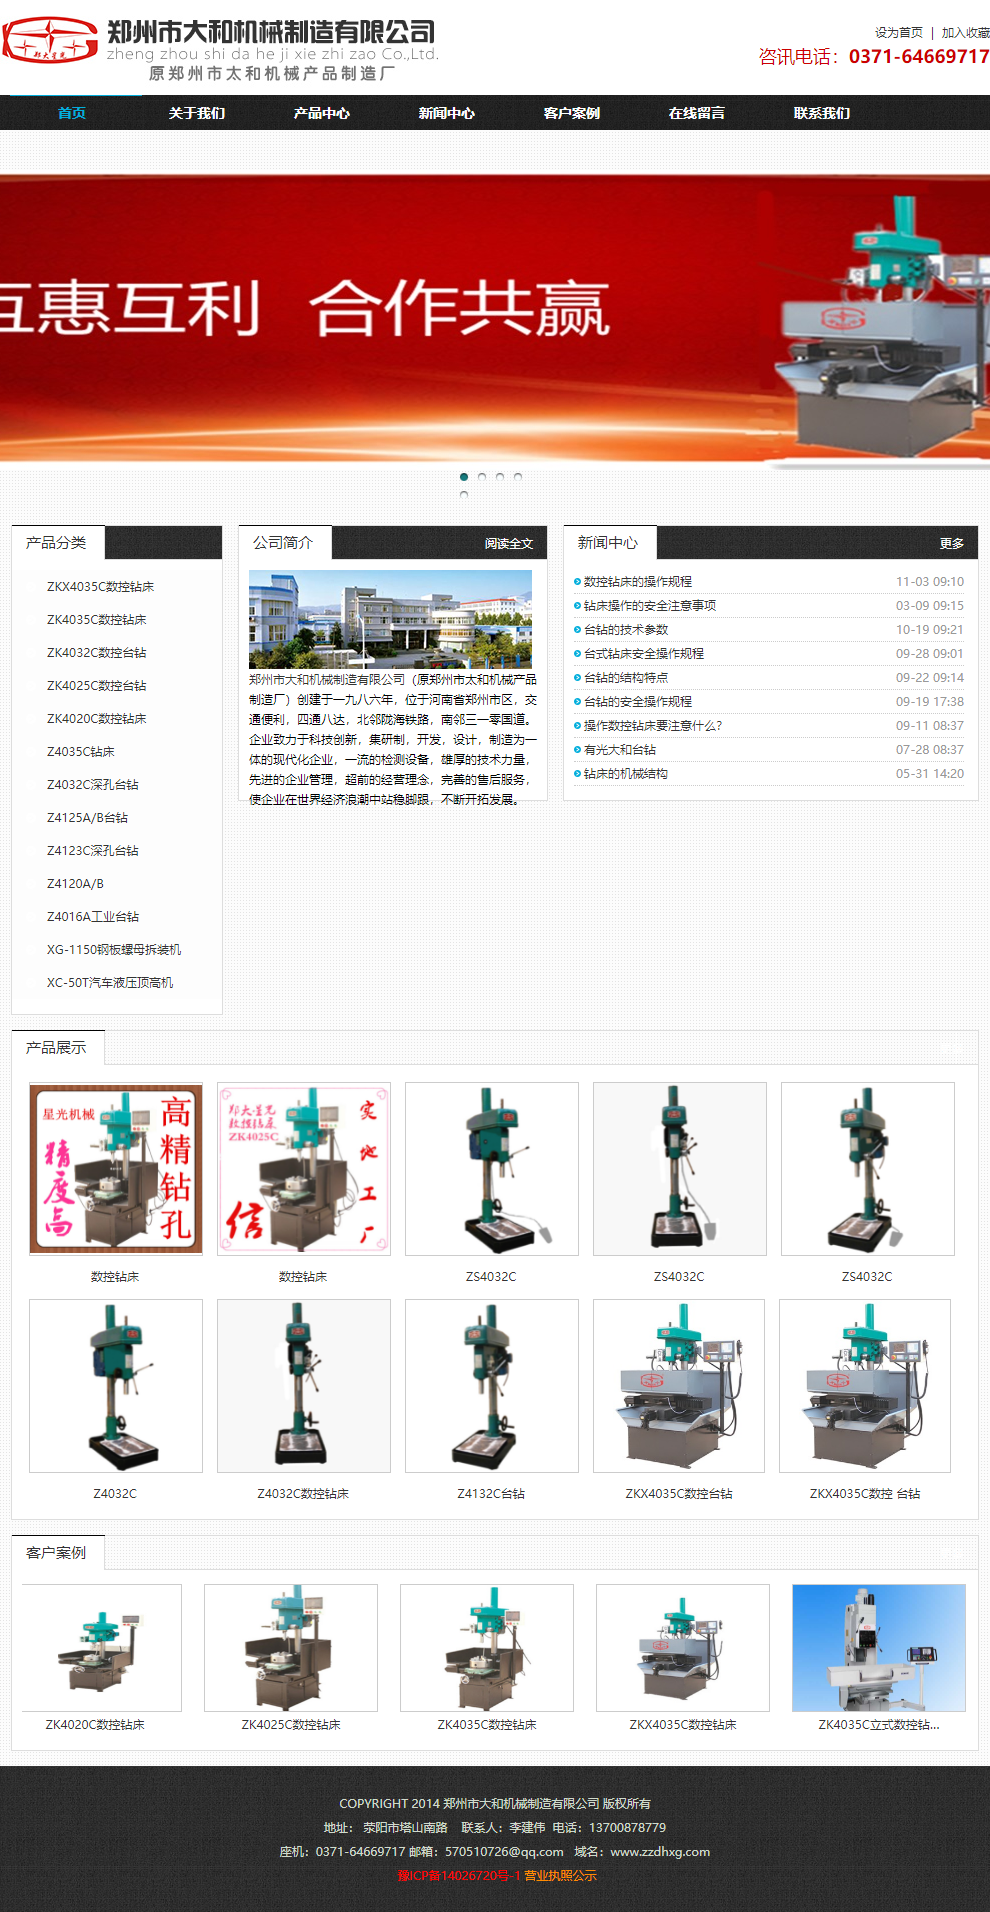 郑州市大和机械制造有限公司网站案例